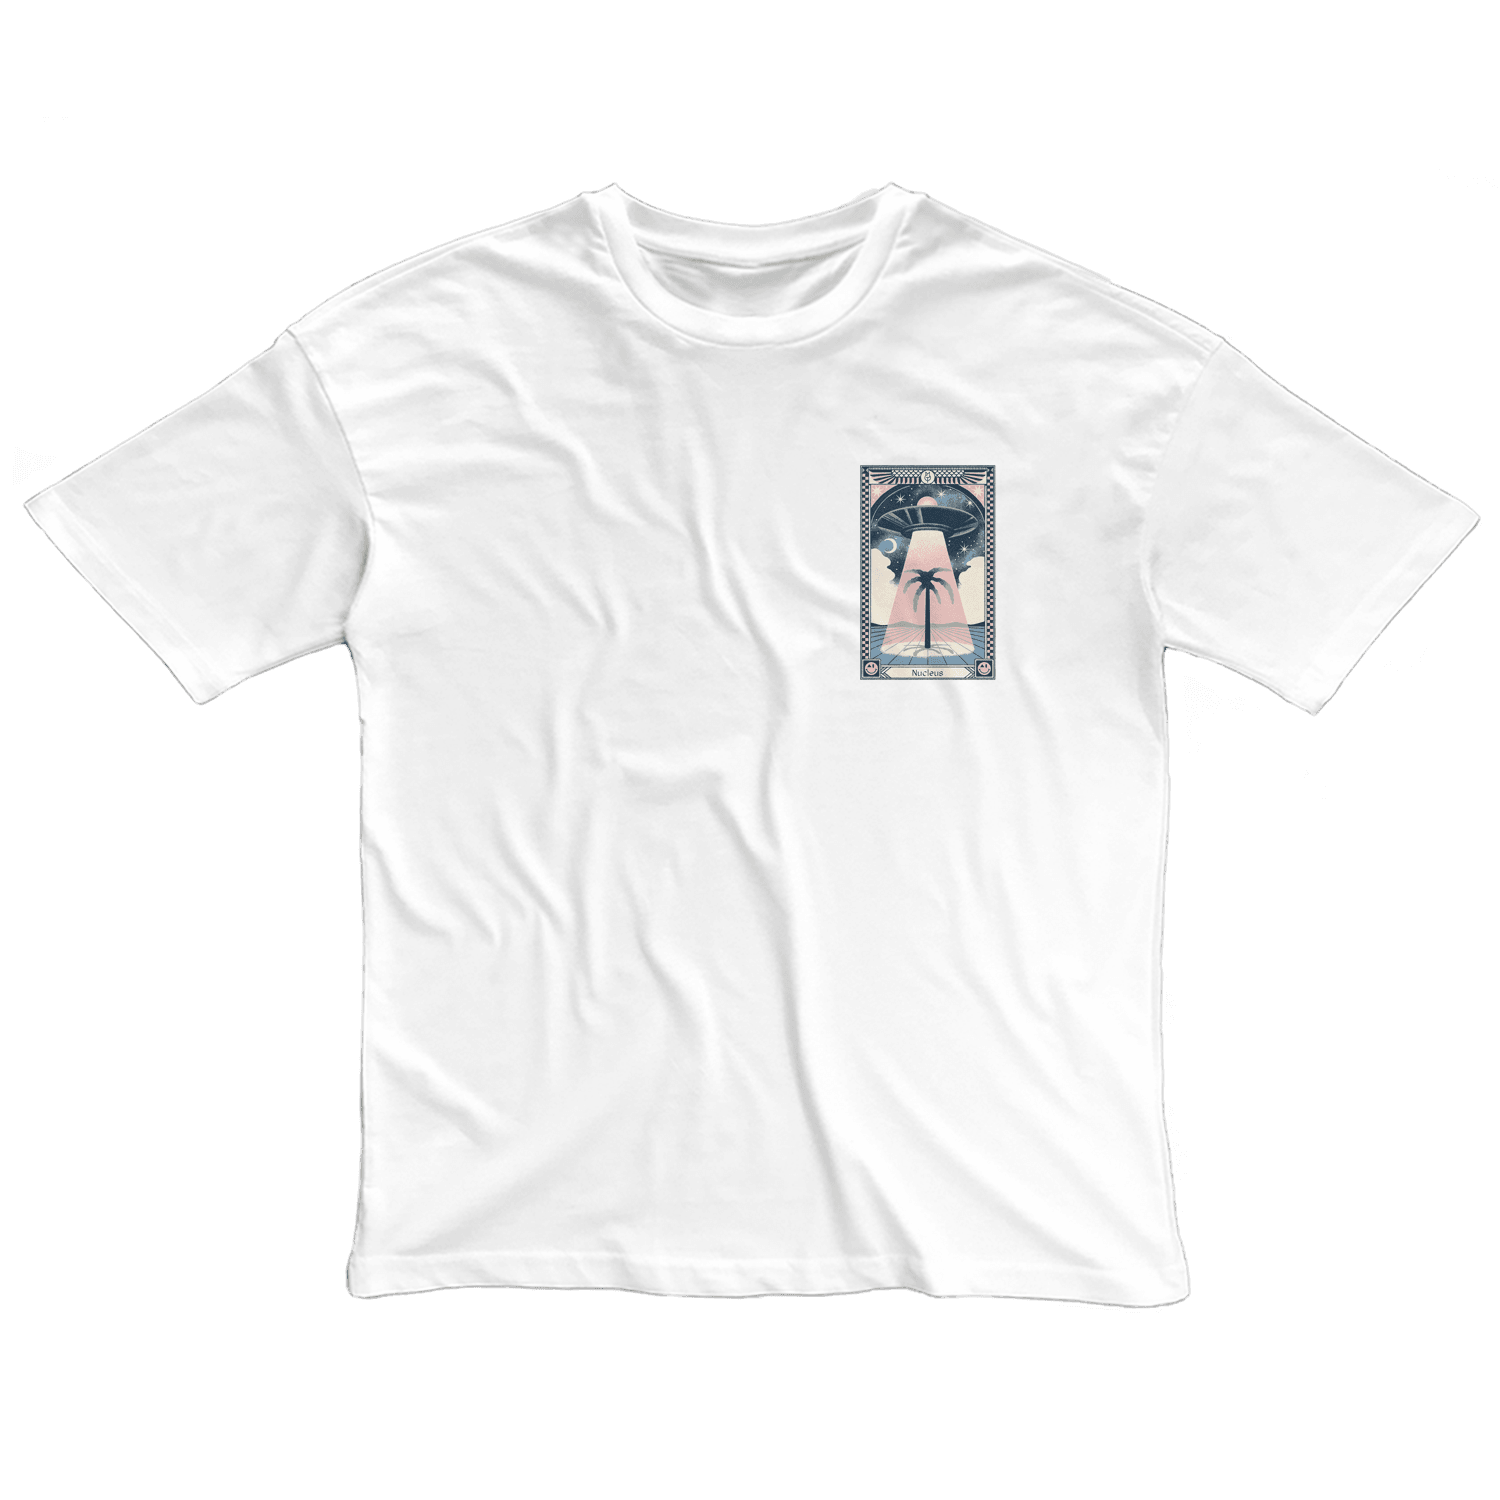 Nucleus — Oversize T-Shirt